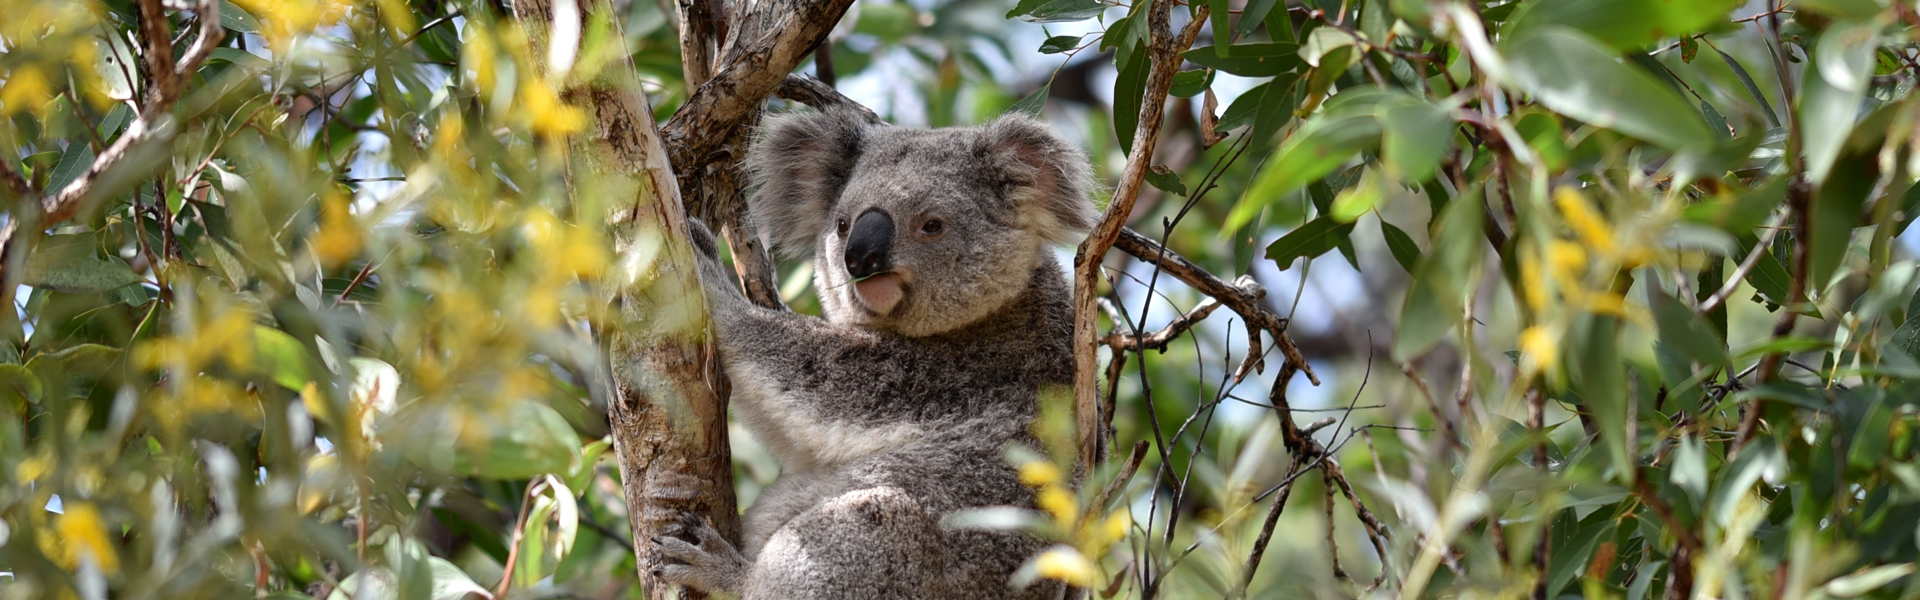 koala-1920x600